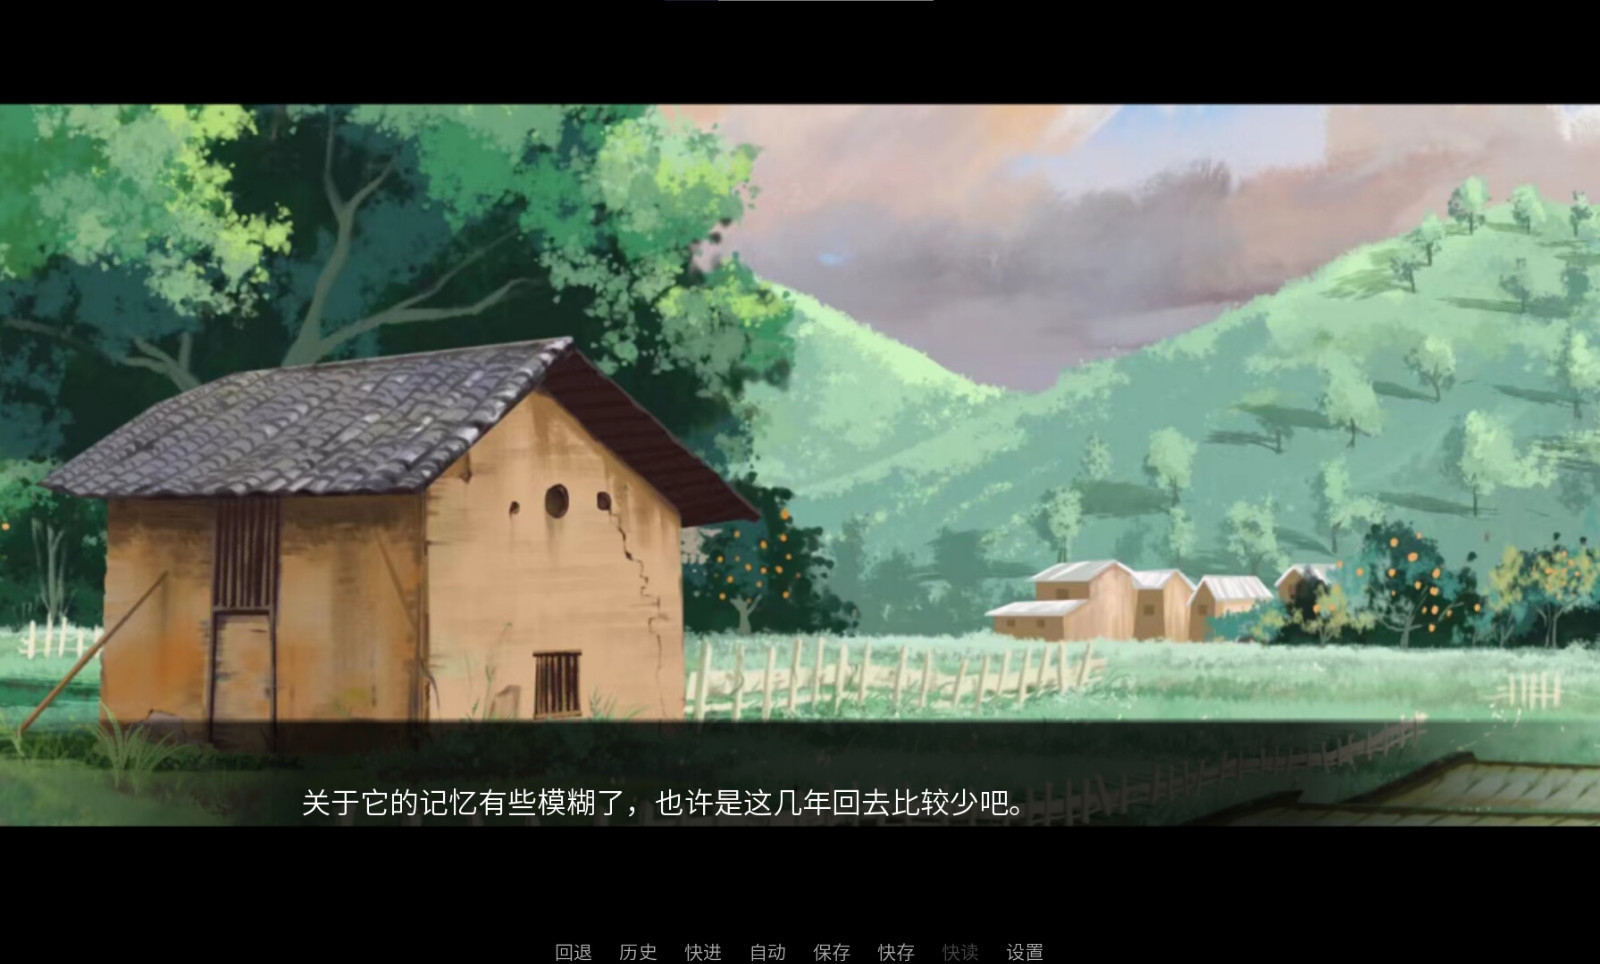 国产新写实主义视觉小说《龙栖》3月21日发售 取材于中国龙母民俗文化